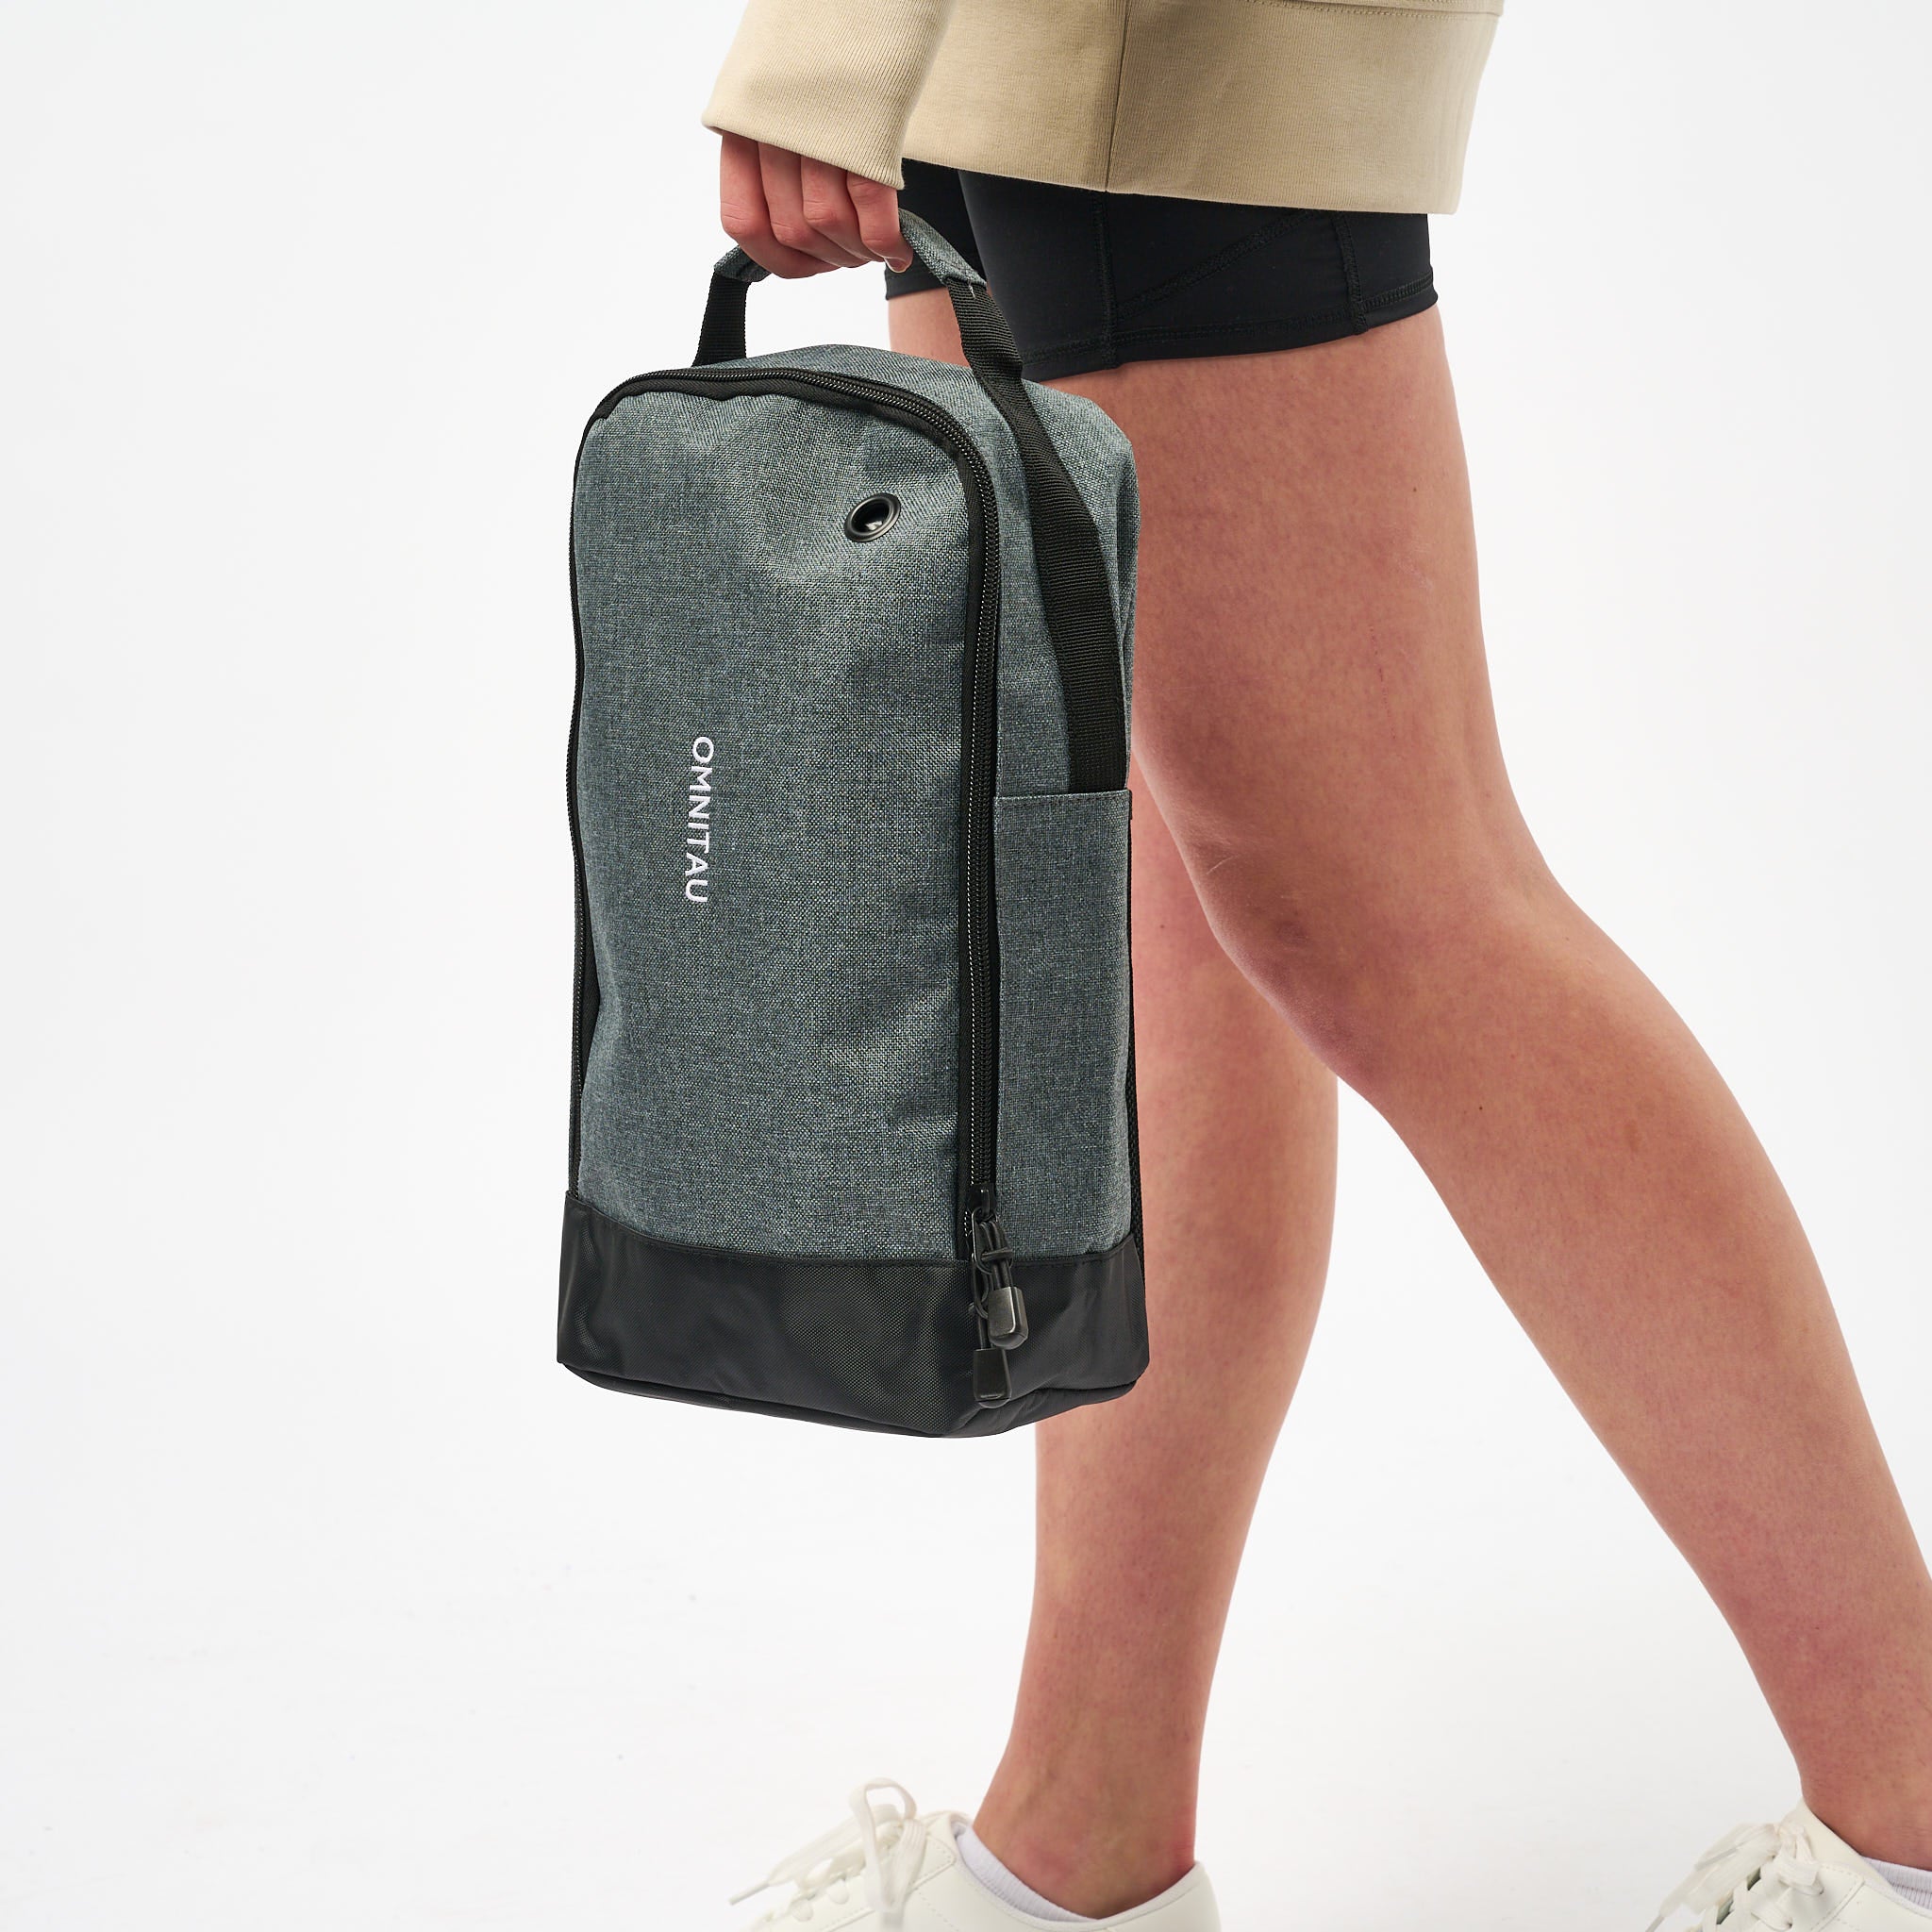 Omnitau Team Sports 8 Litre Zip Up Boot Bag - Grey